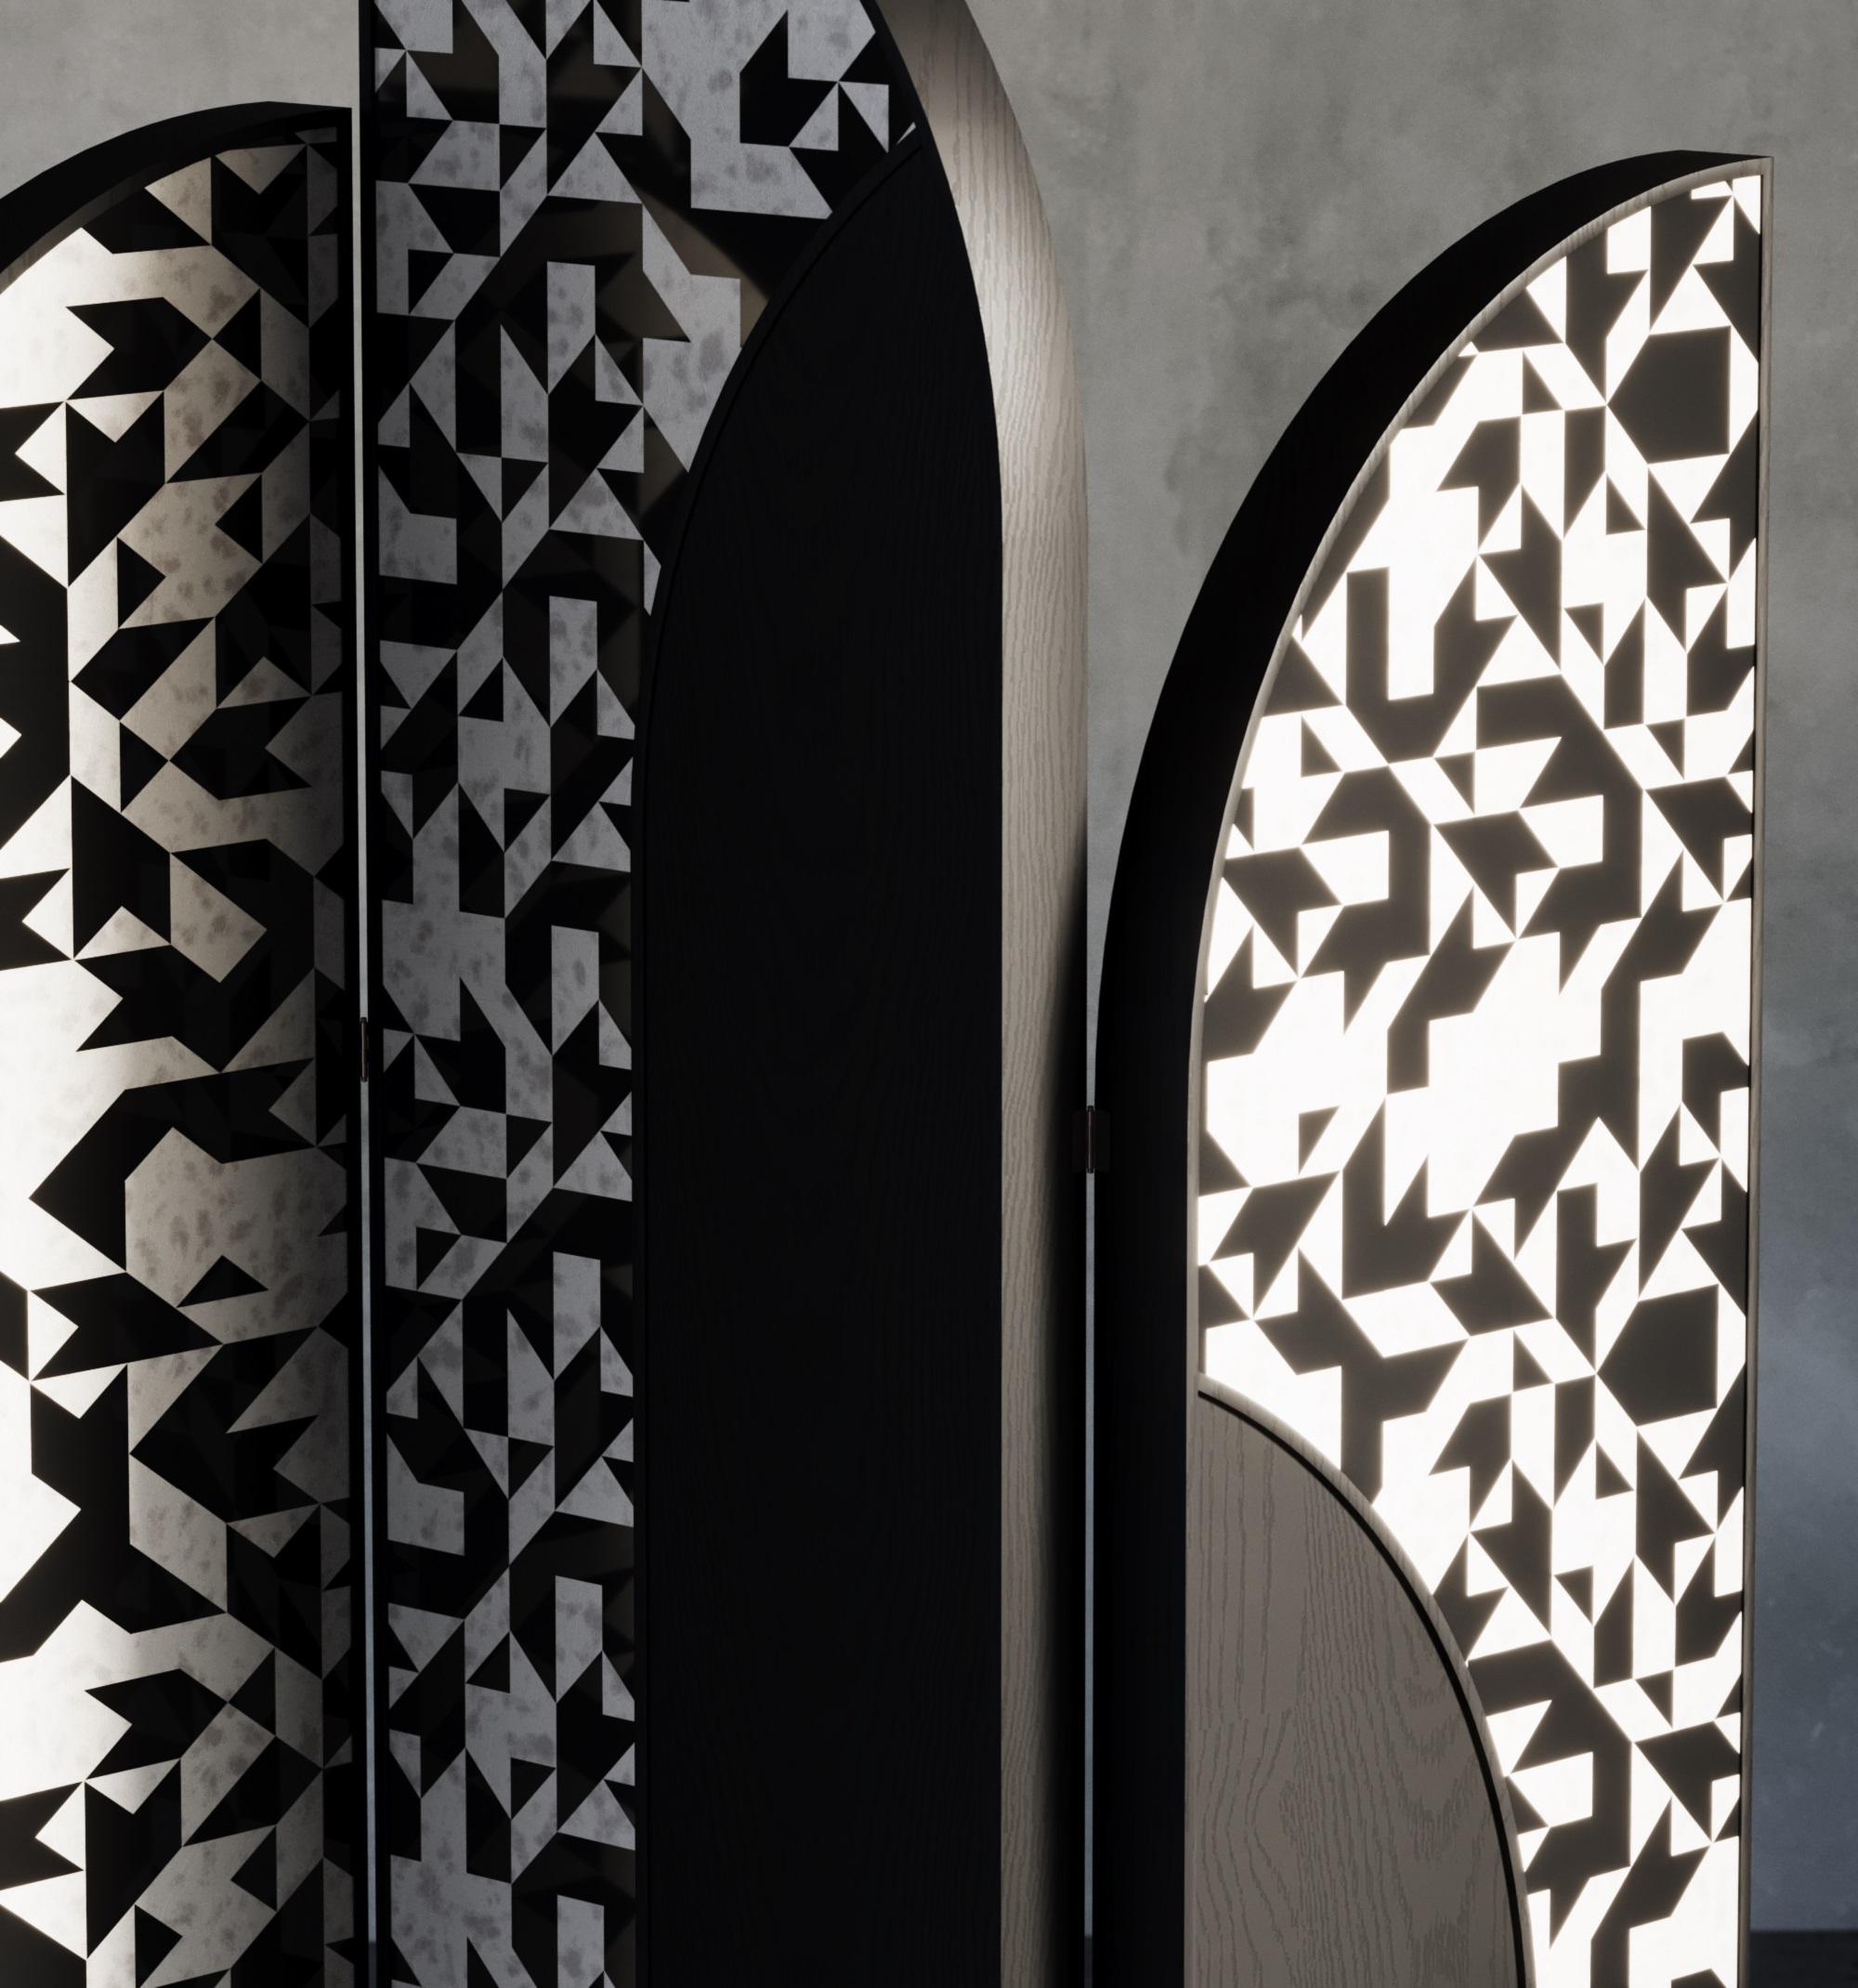 Mit aufwendig gemusterten Intarsien aus Knochen und Harz. Die Collection'S Noir ist eine eindrucksvolle Vision geometrischer Schönheit. Unsere Bone Inlay Kollektion wird in Indien von hochqualifizierten Handwerkern mit traditionellen Techniken